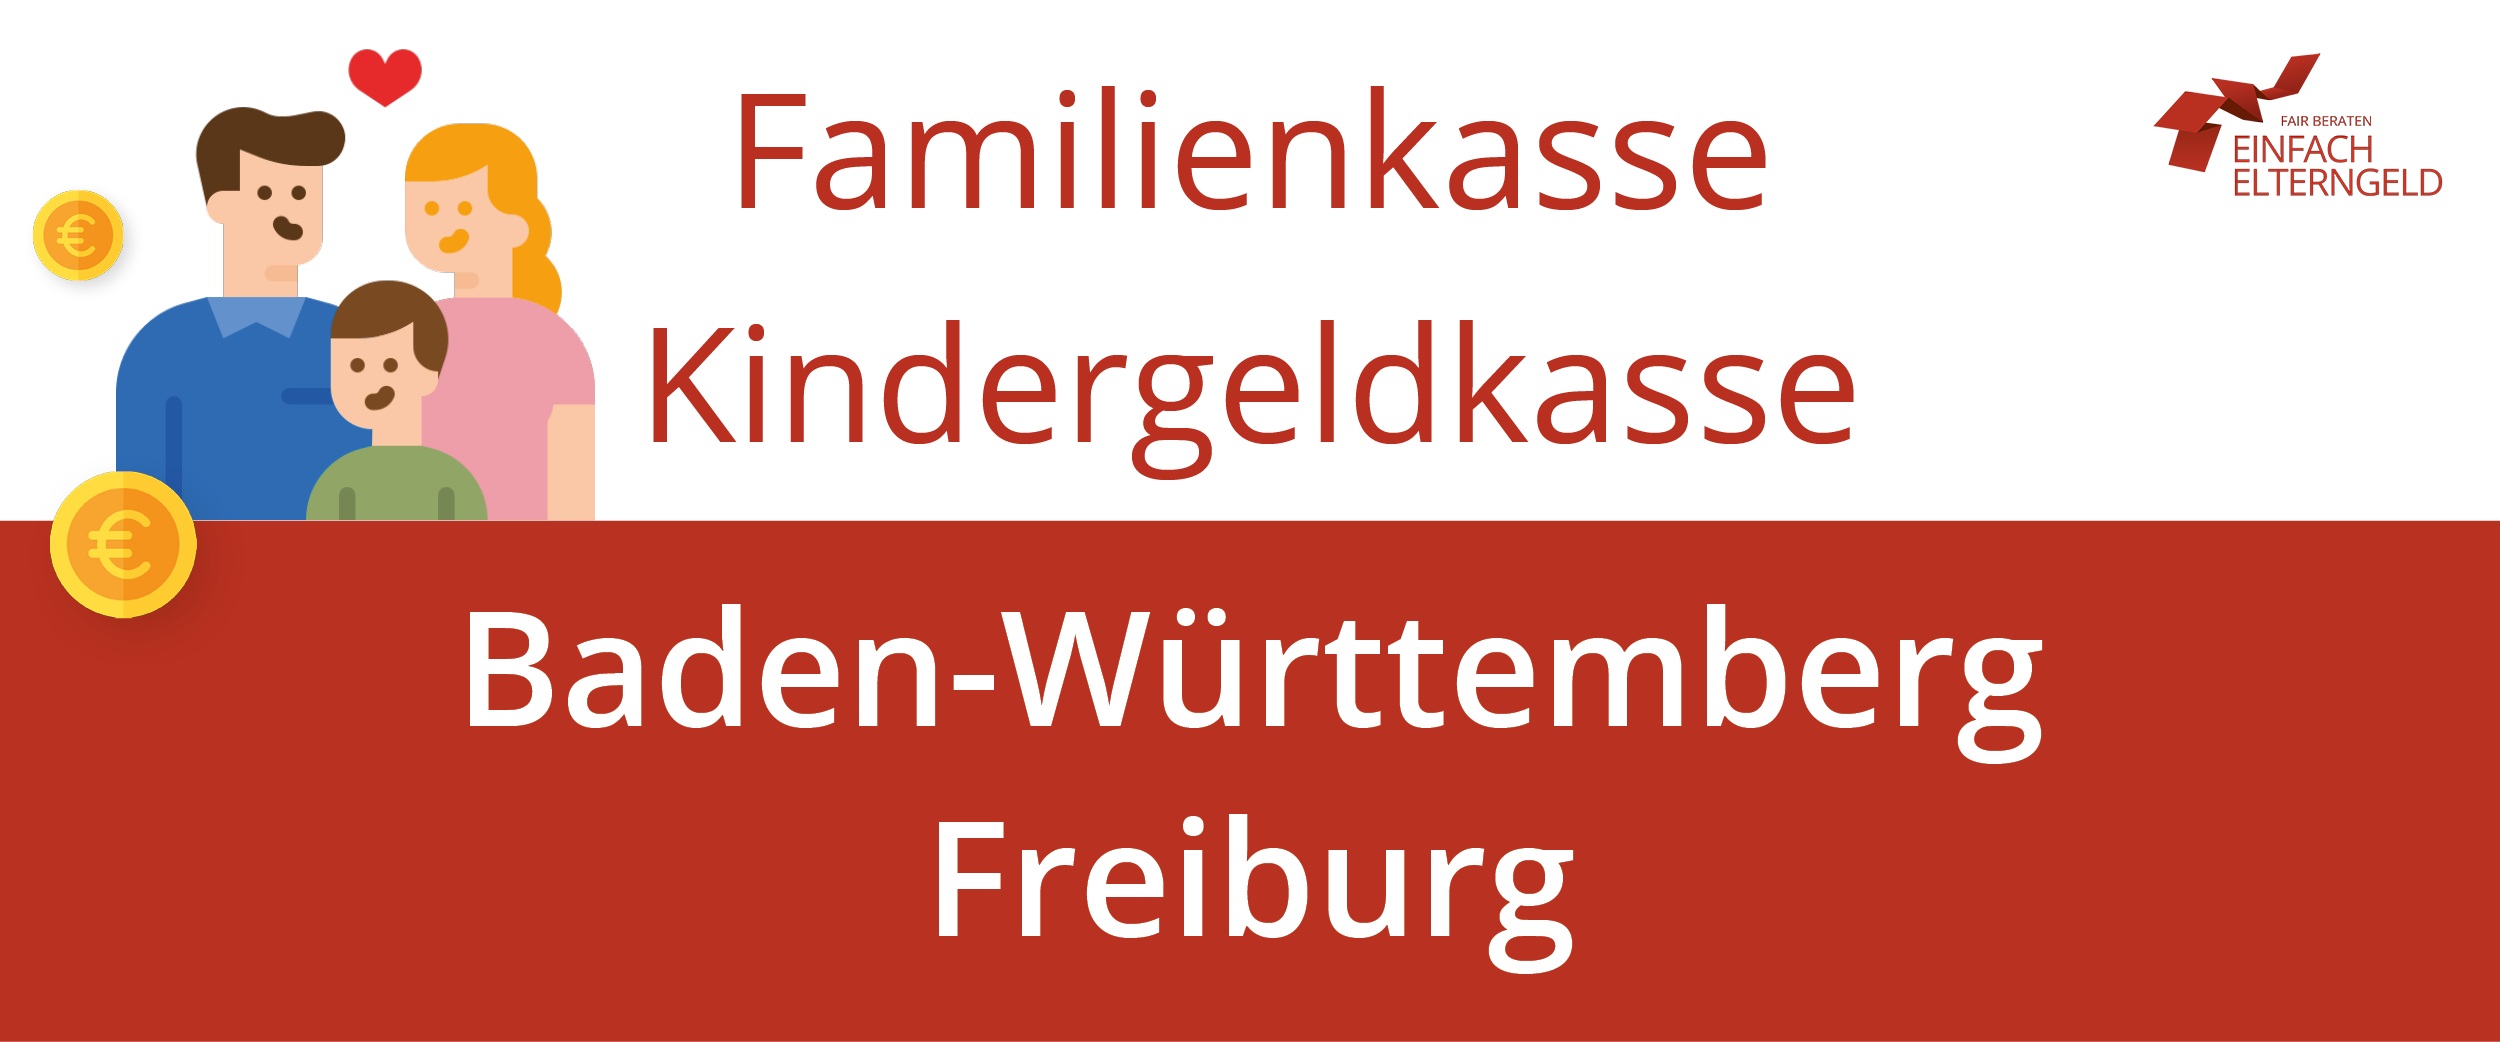 Familienkasse Kindergeldkasse Baden-Württemberg Freiburg - So erreichen Sie Ihre Familienkasse.